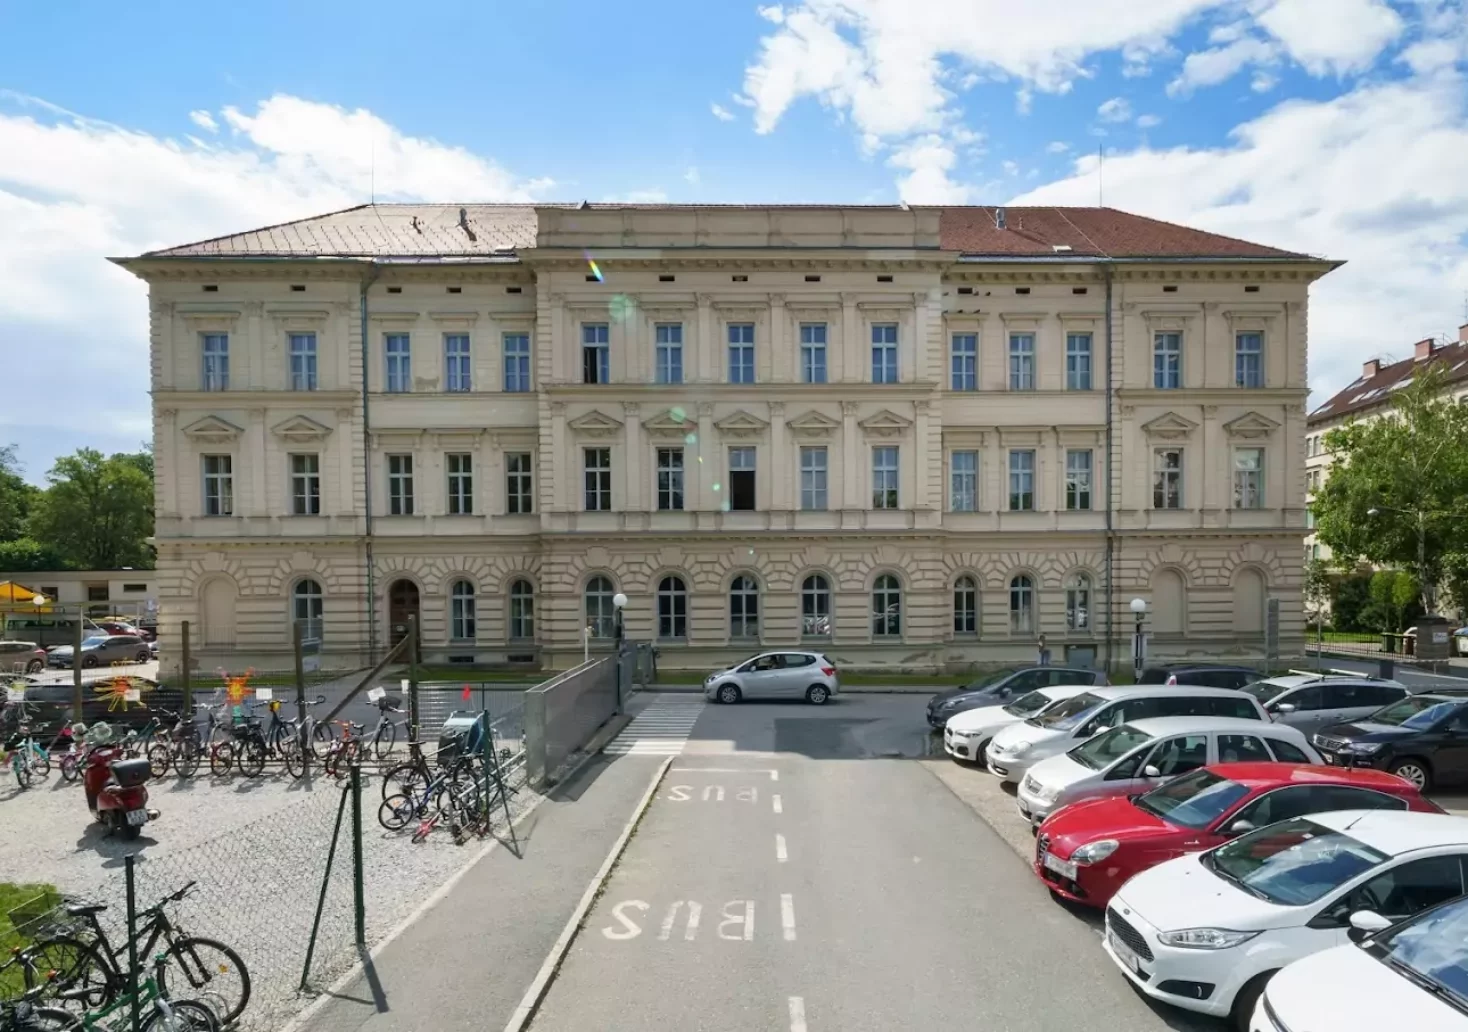 Foto auf 5min.at zeigt die Volksschule Rosenberg in Graz.